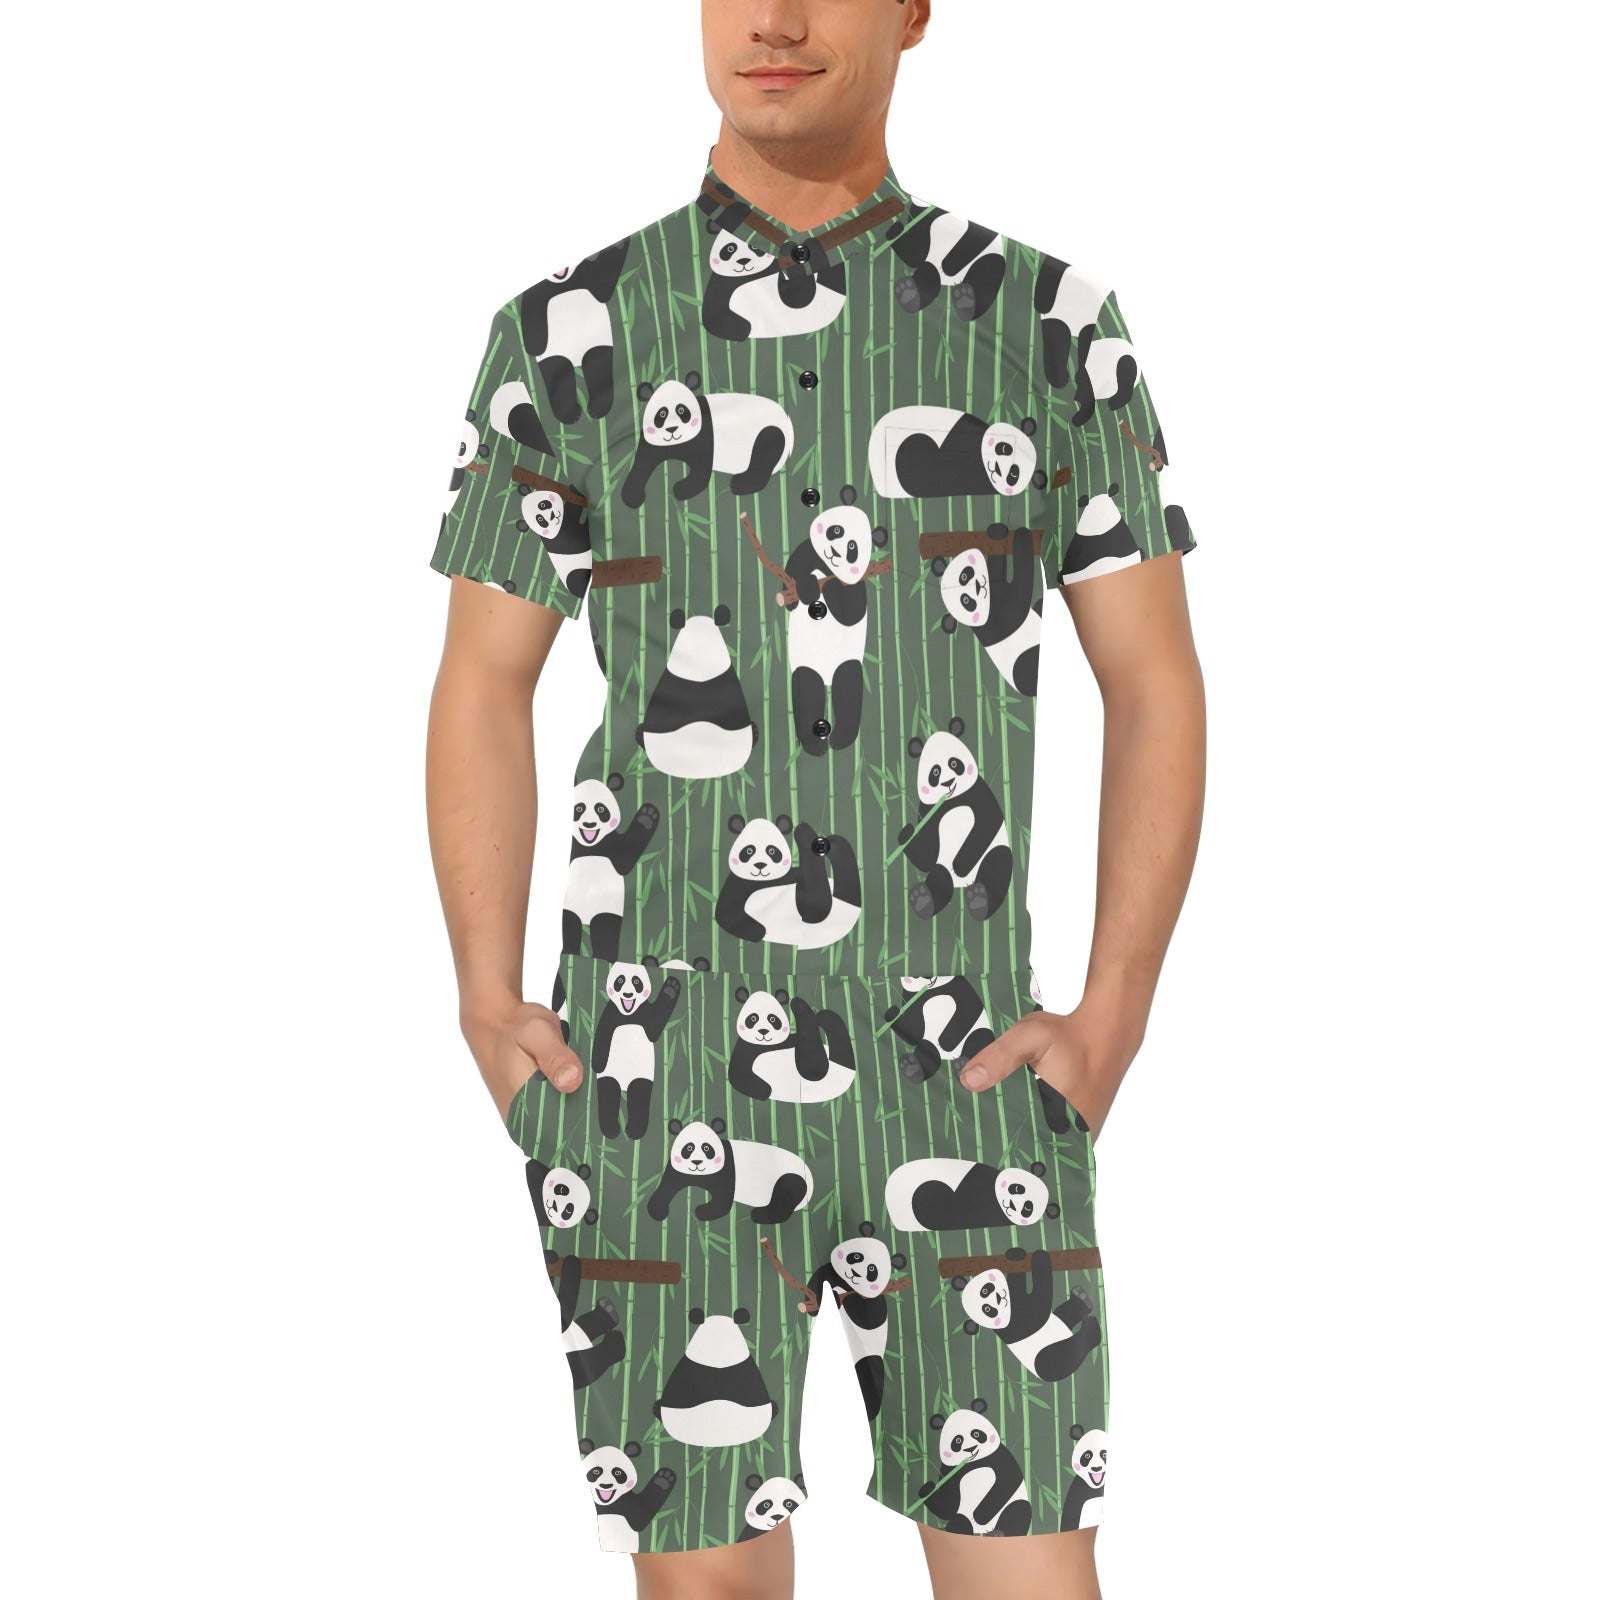 Panda Pattern Print Design A04 Men's Romper